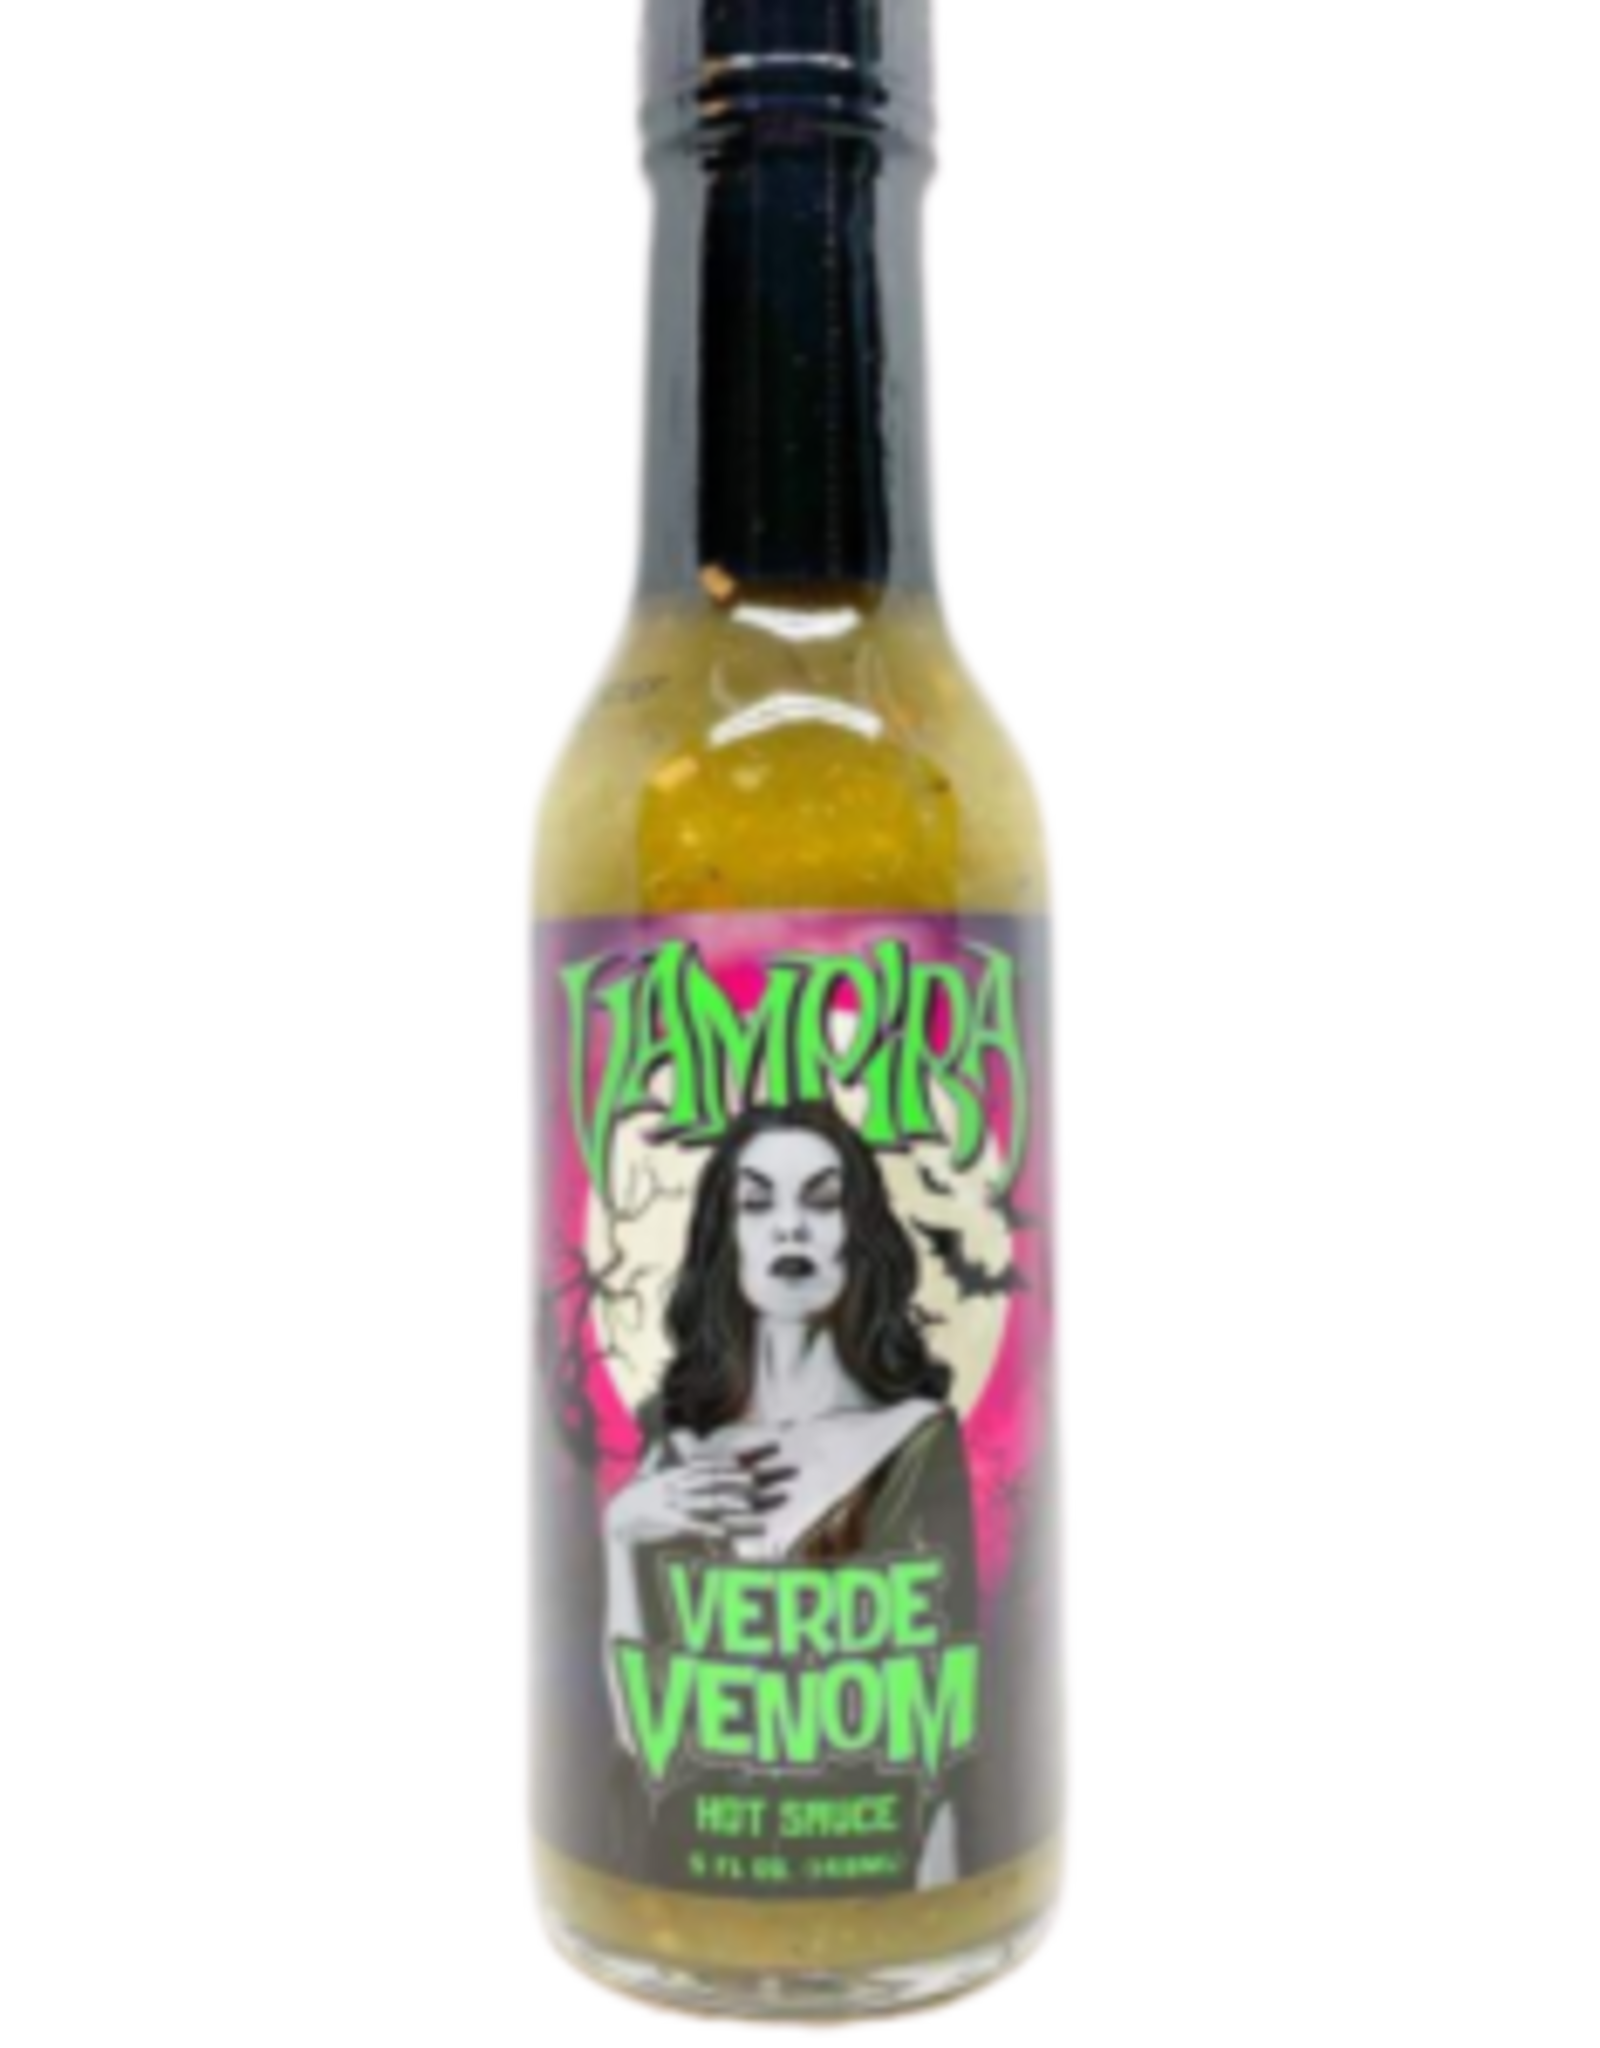 Hellfire Vampira "Verde Venom"